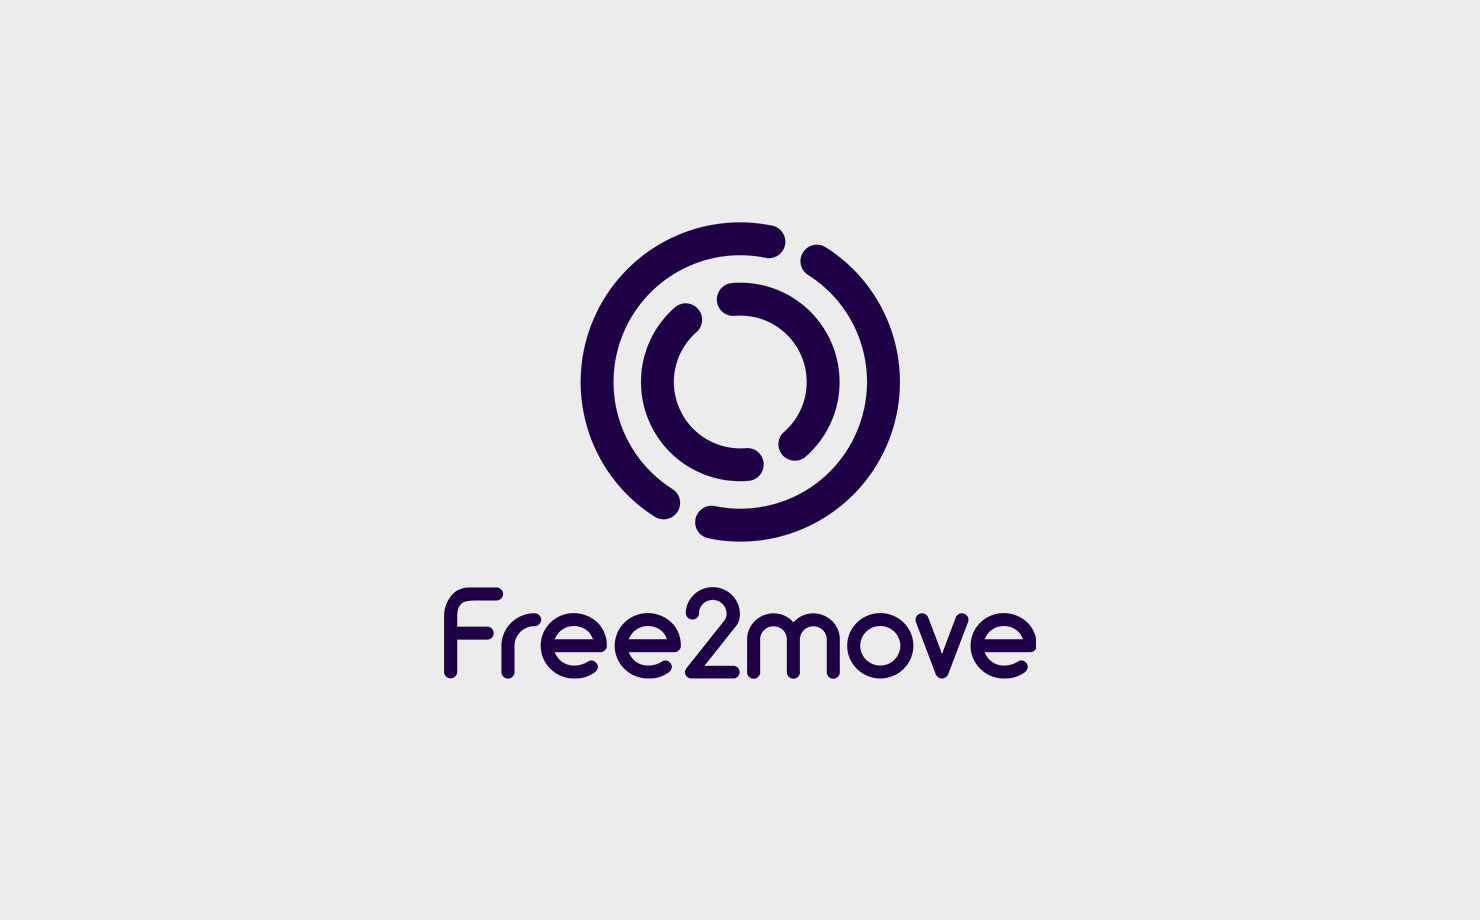 Immagine di Free2move logo